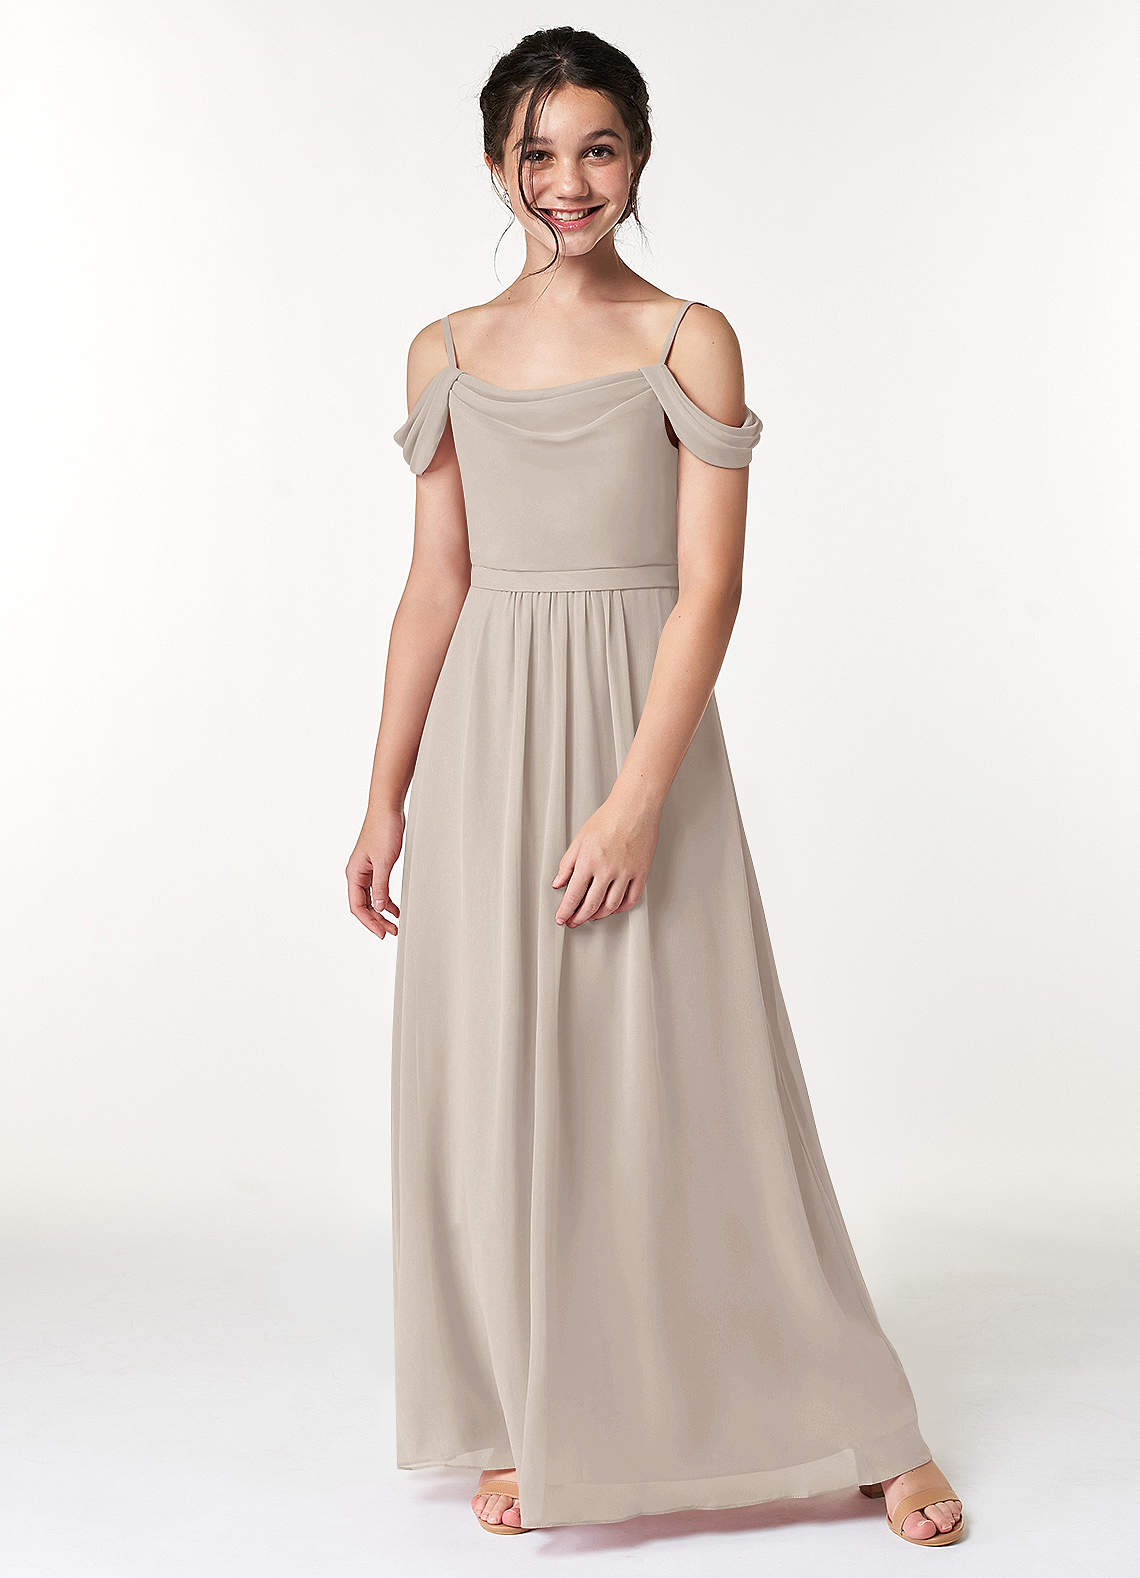 Azazie Alivia A-Line Off the Shoulder Chiffon Floor-Length Junior Bridesmaid Dress image1